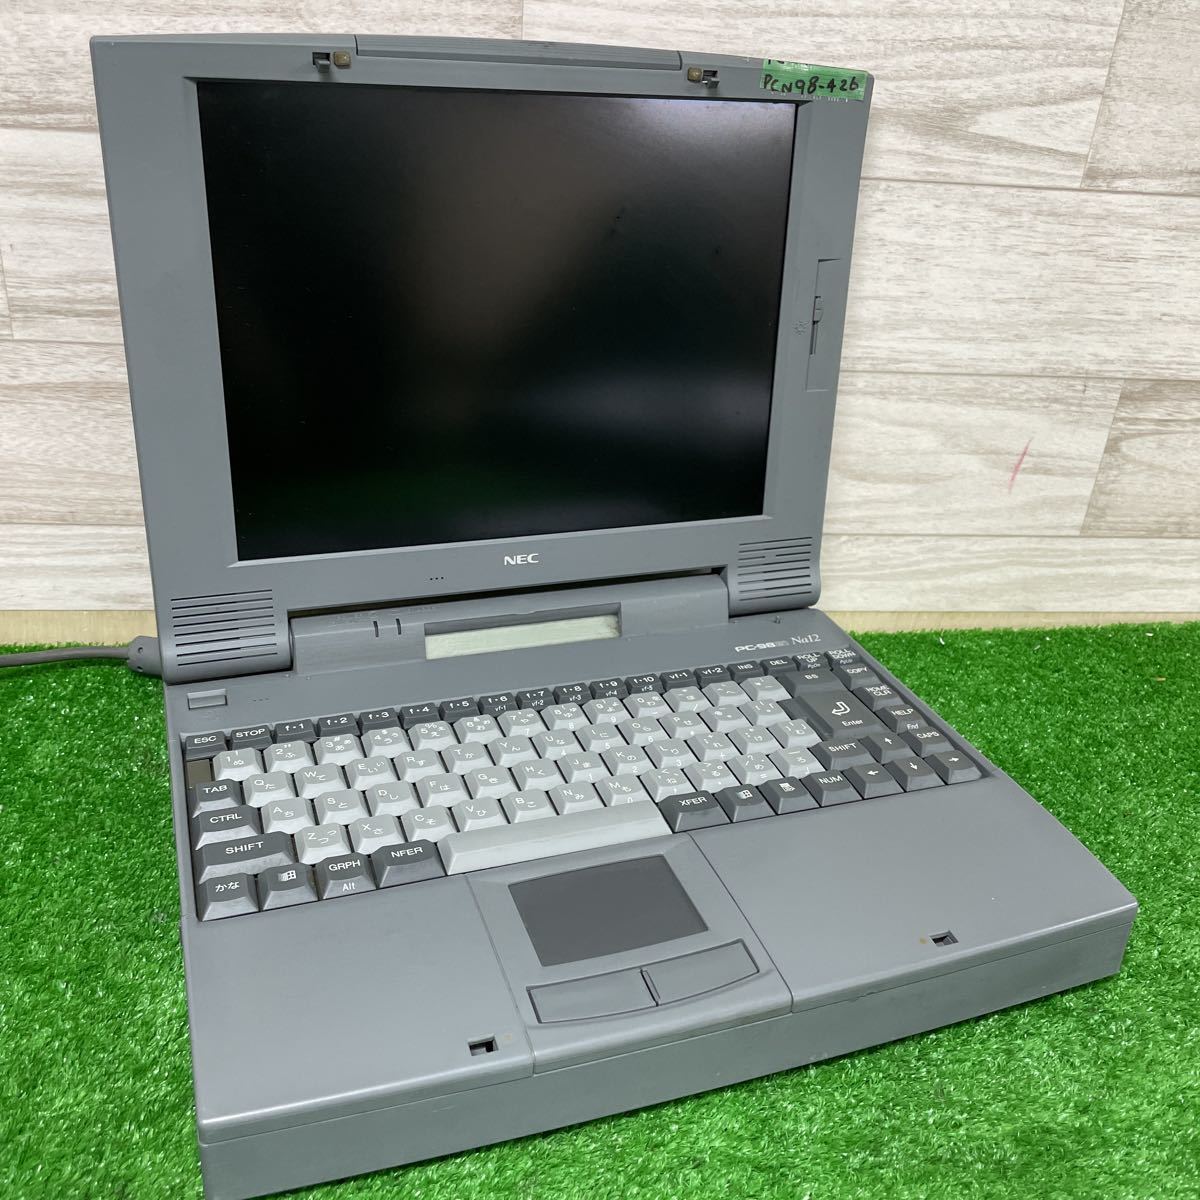 YN87【ジャンク】NEC 旧型ノートパソコン PC-9821Nr13/D10 model A